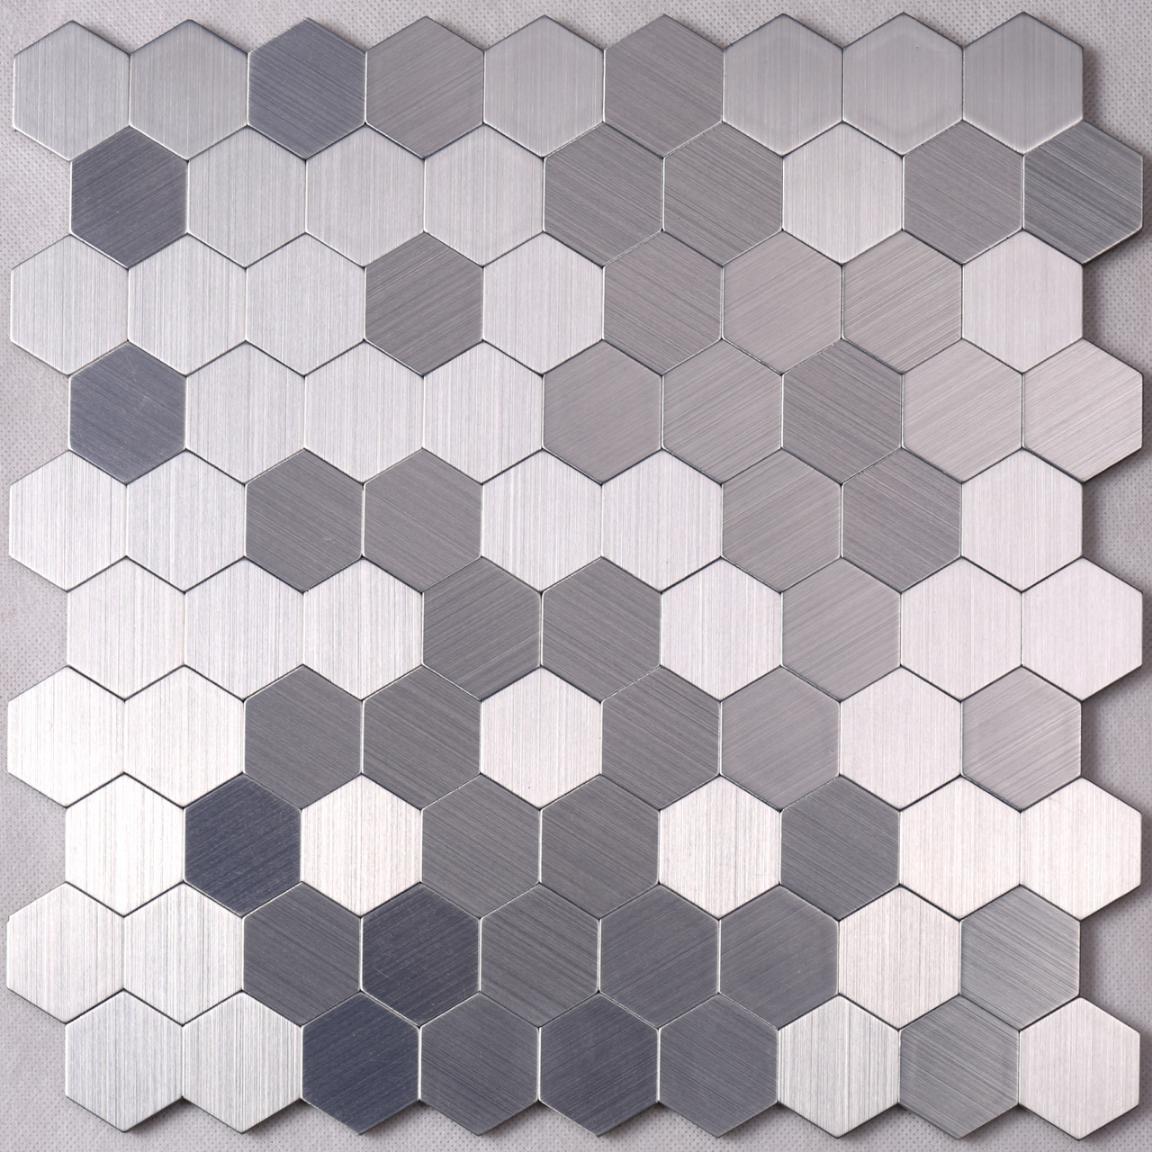 Heng Xing grey metal mosaic tile series for kitchen-1